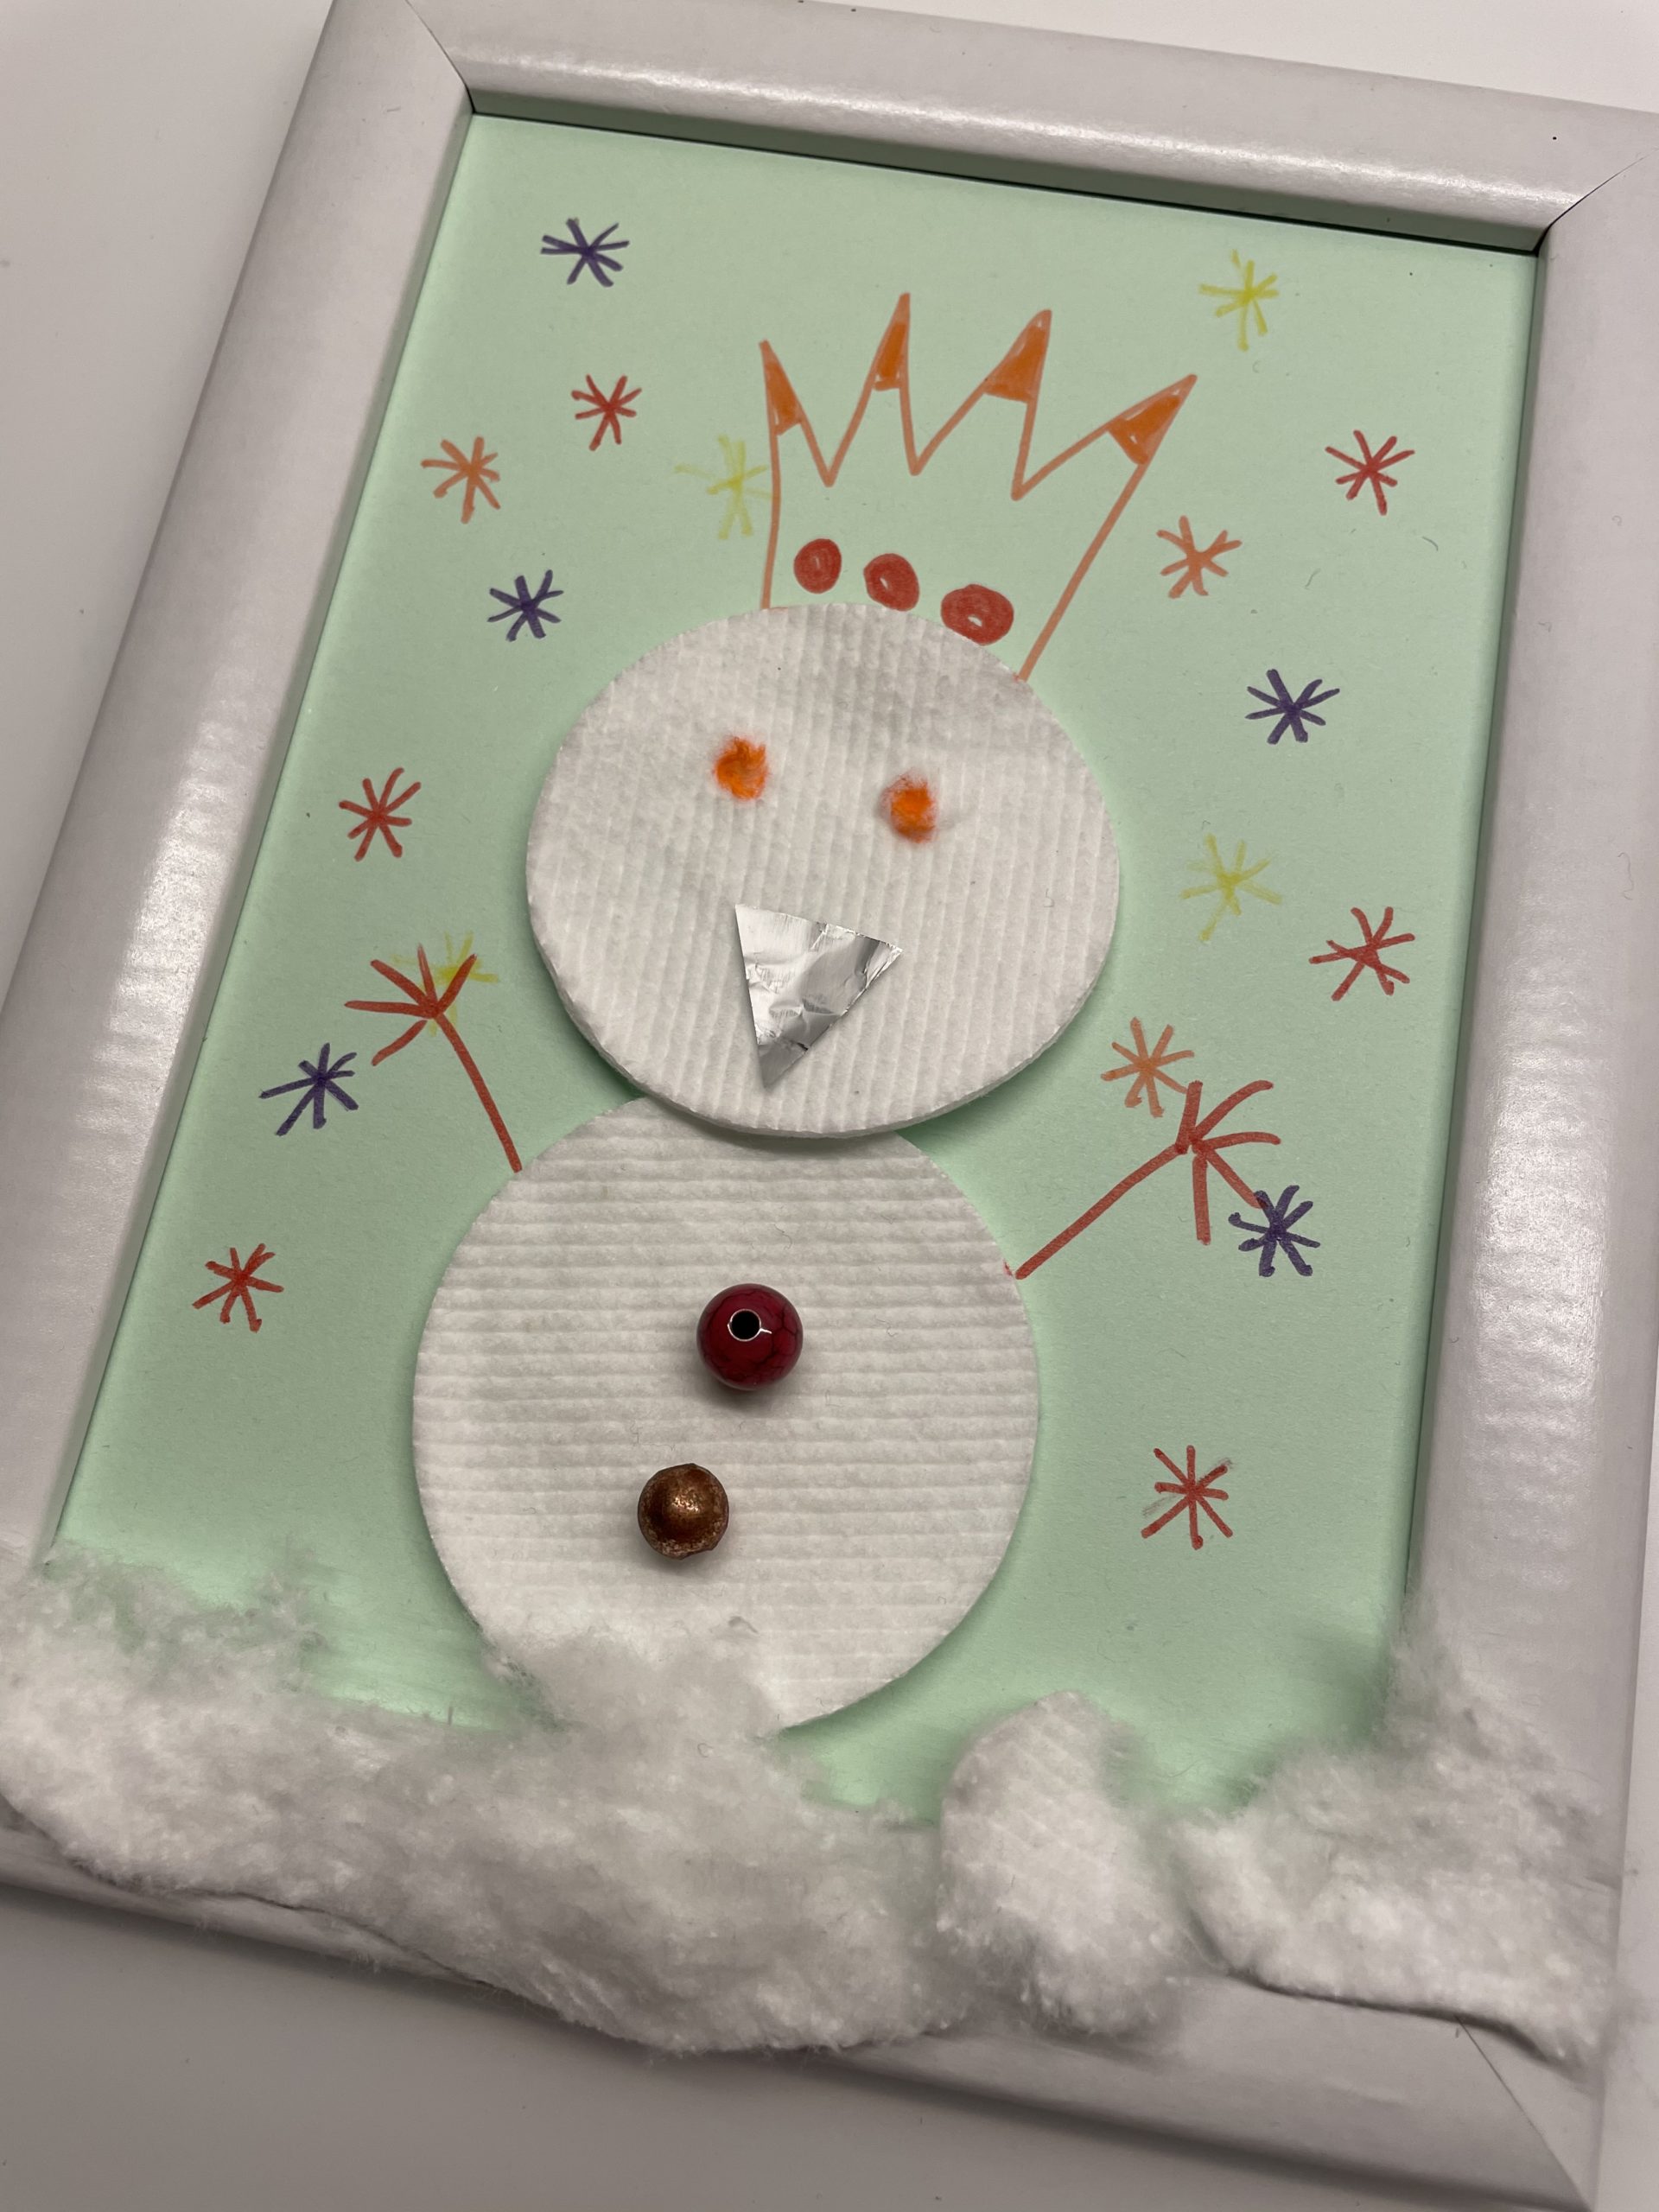 Bild zum Schritt 19 für das Bastel- und DIY-Abenteuer für Kinder: 'Diese Schneekönigin hat eine gemalte Krone, gemalte Arme und ist...'